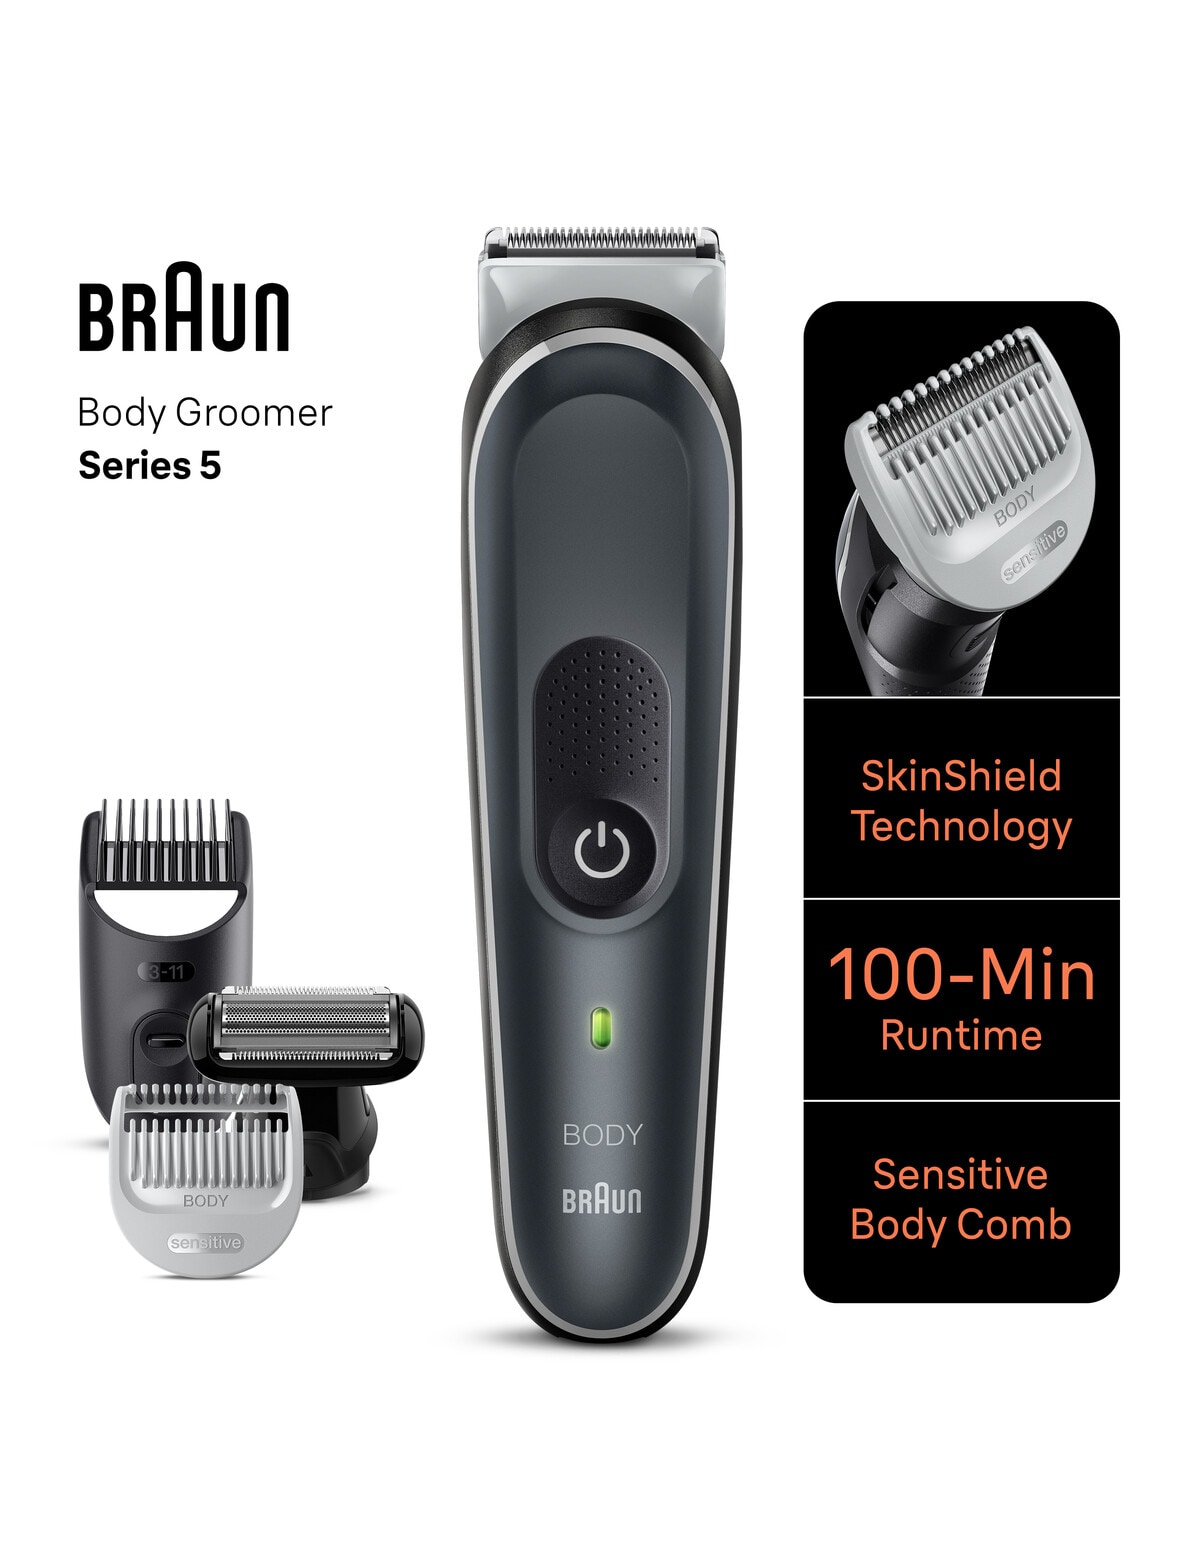 Braun Body Groomer, BG5370 - Men's Shaving & Grooming